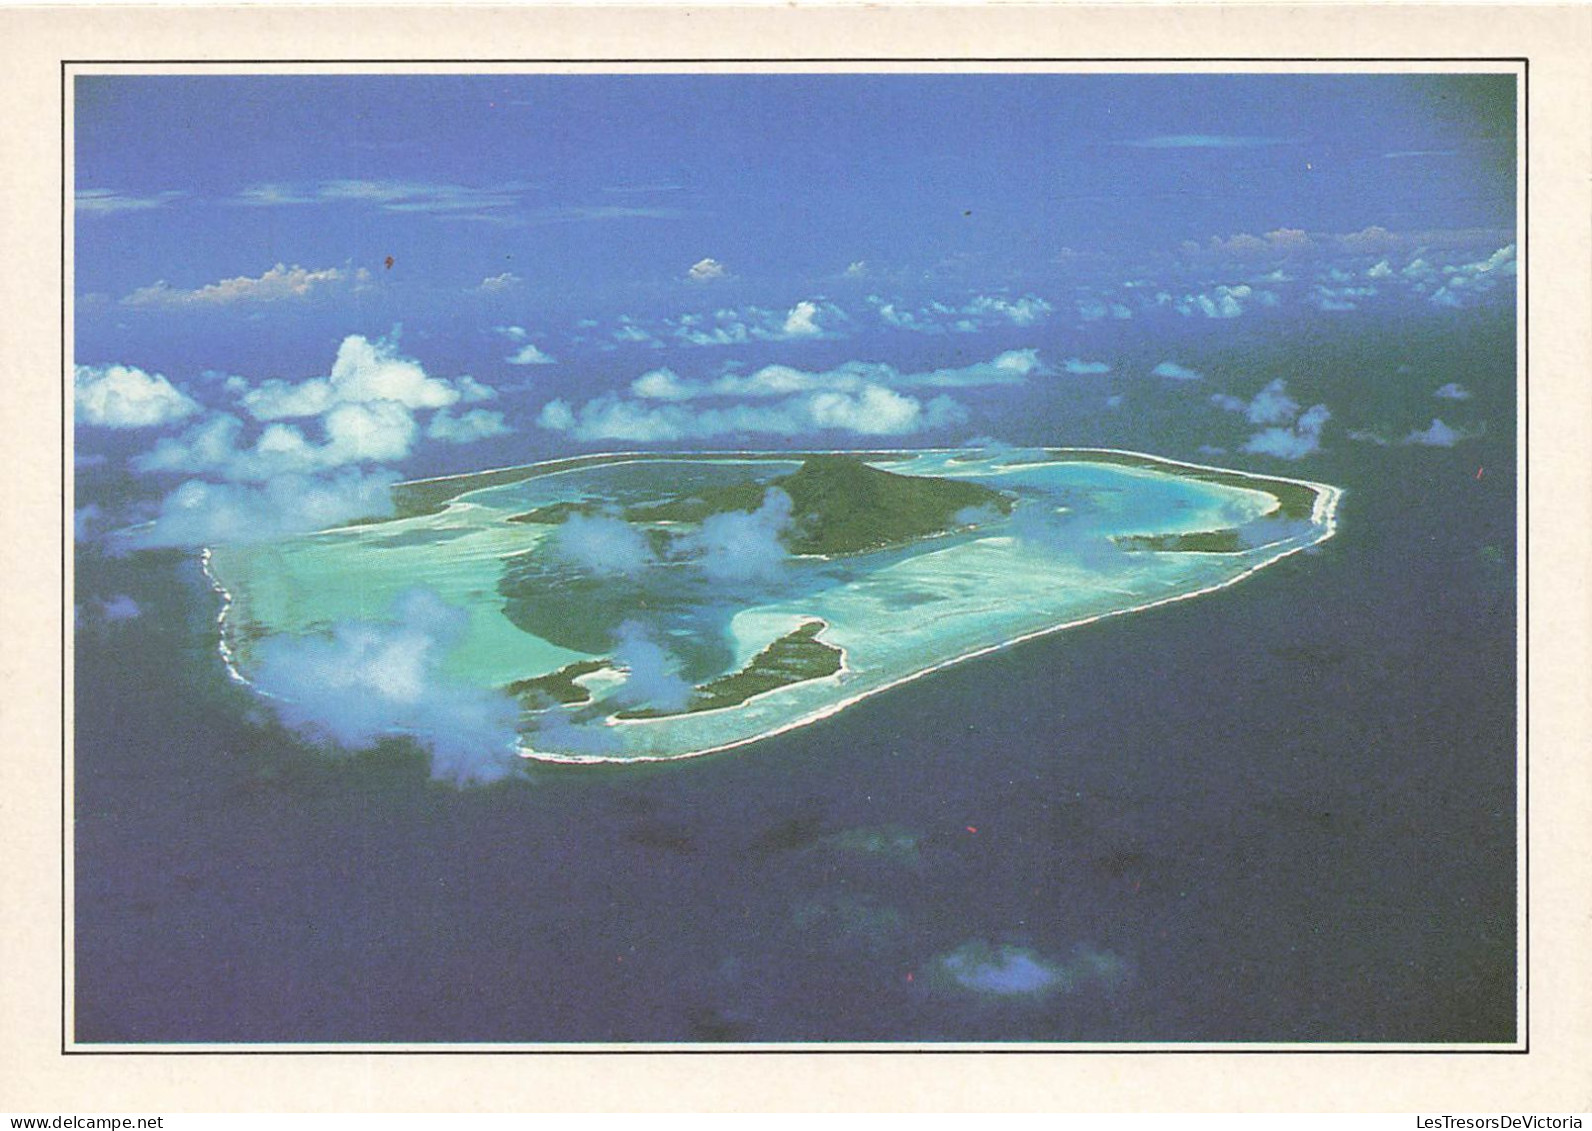 POLYNESIE FRANCAISE - Maupiti - L'île Vue D'avion - Colorisé - Carte Postale - Frans-Polynesië